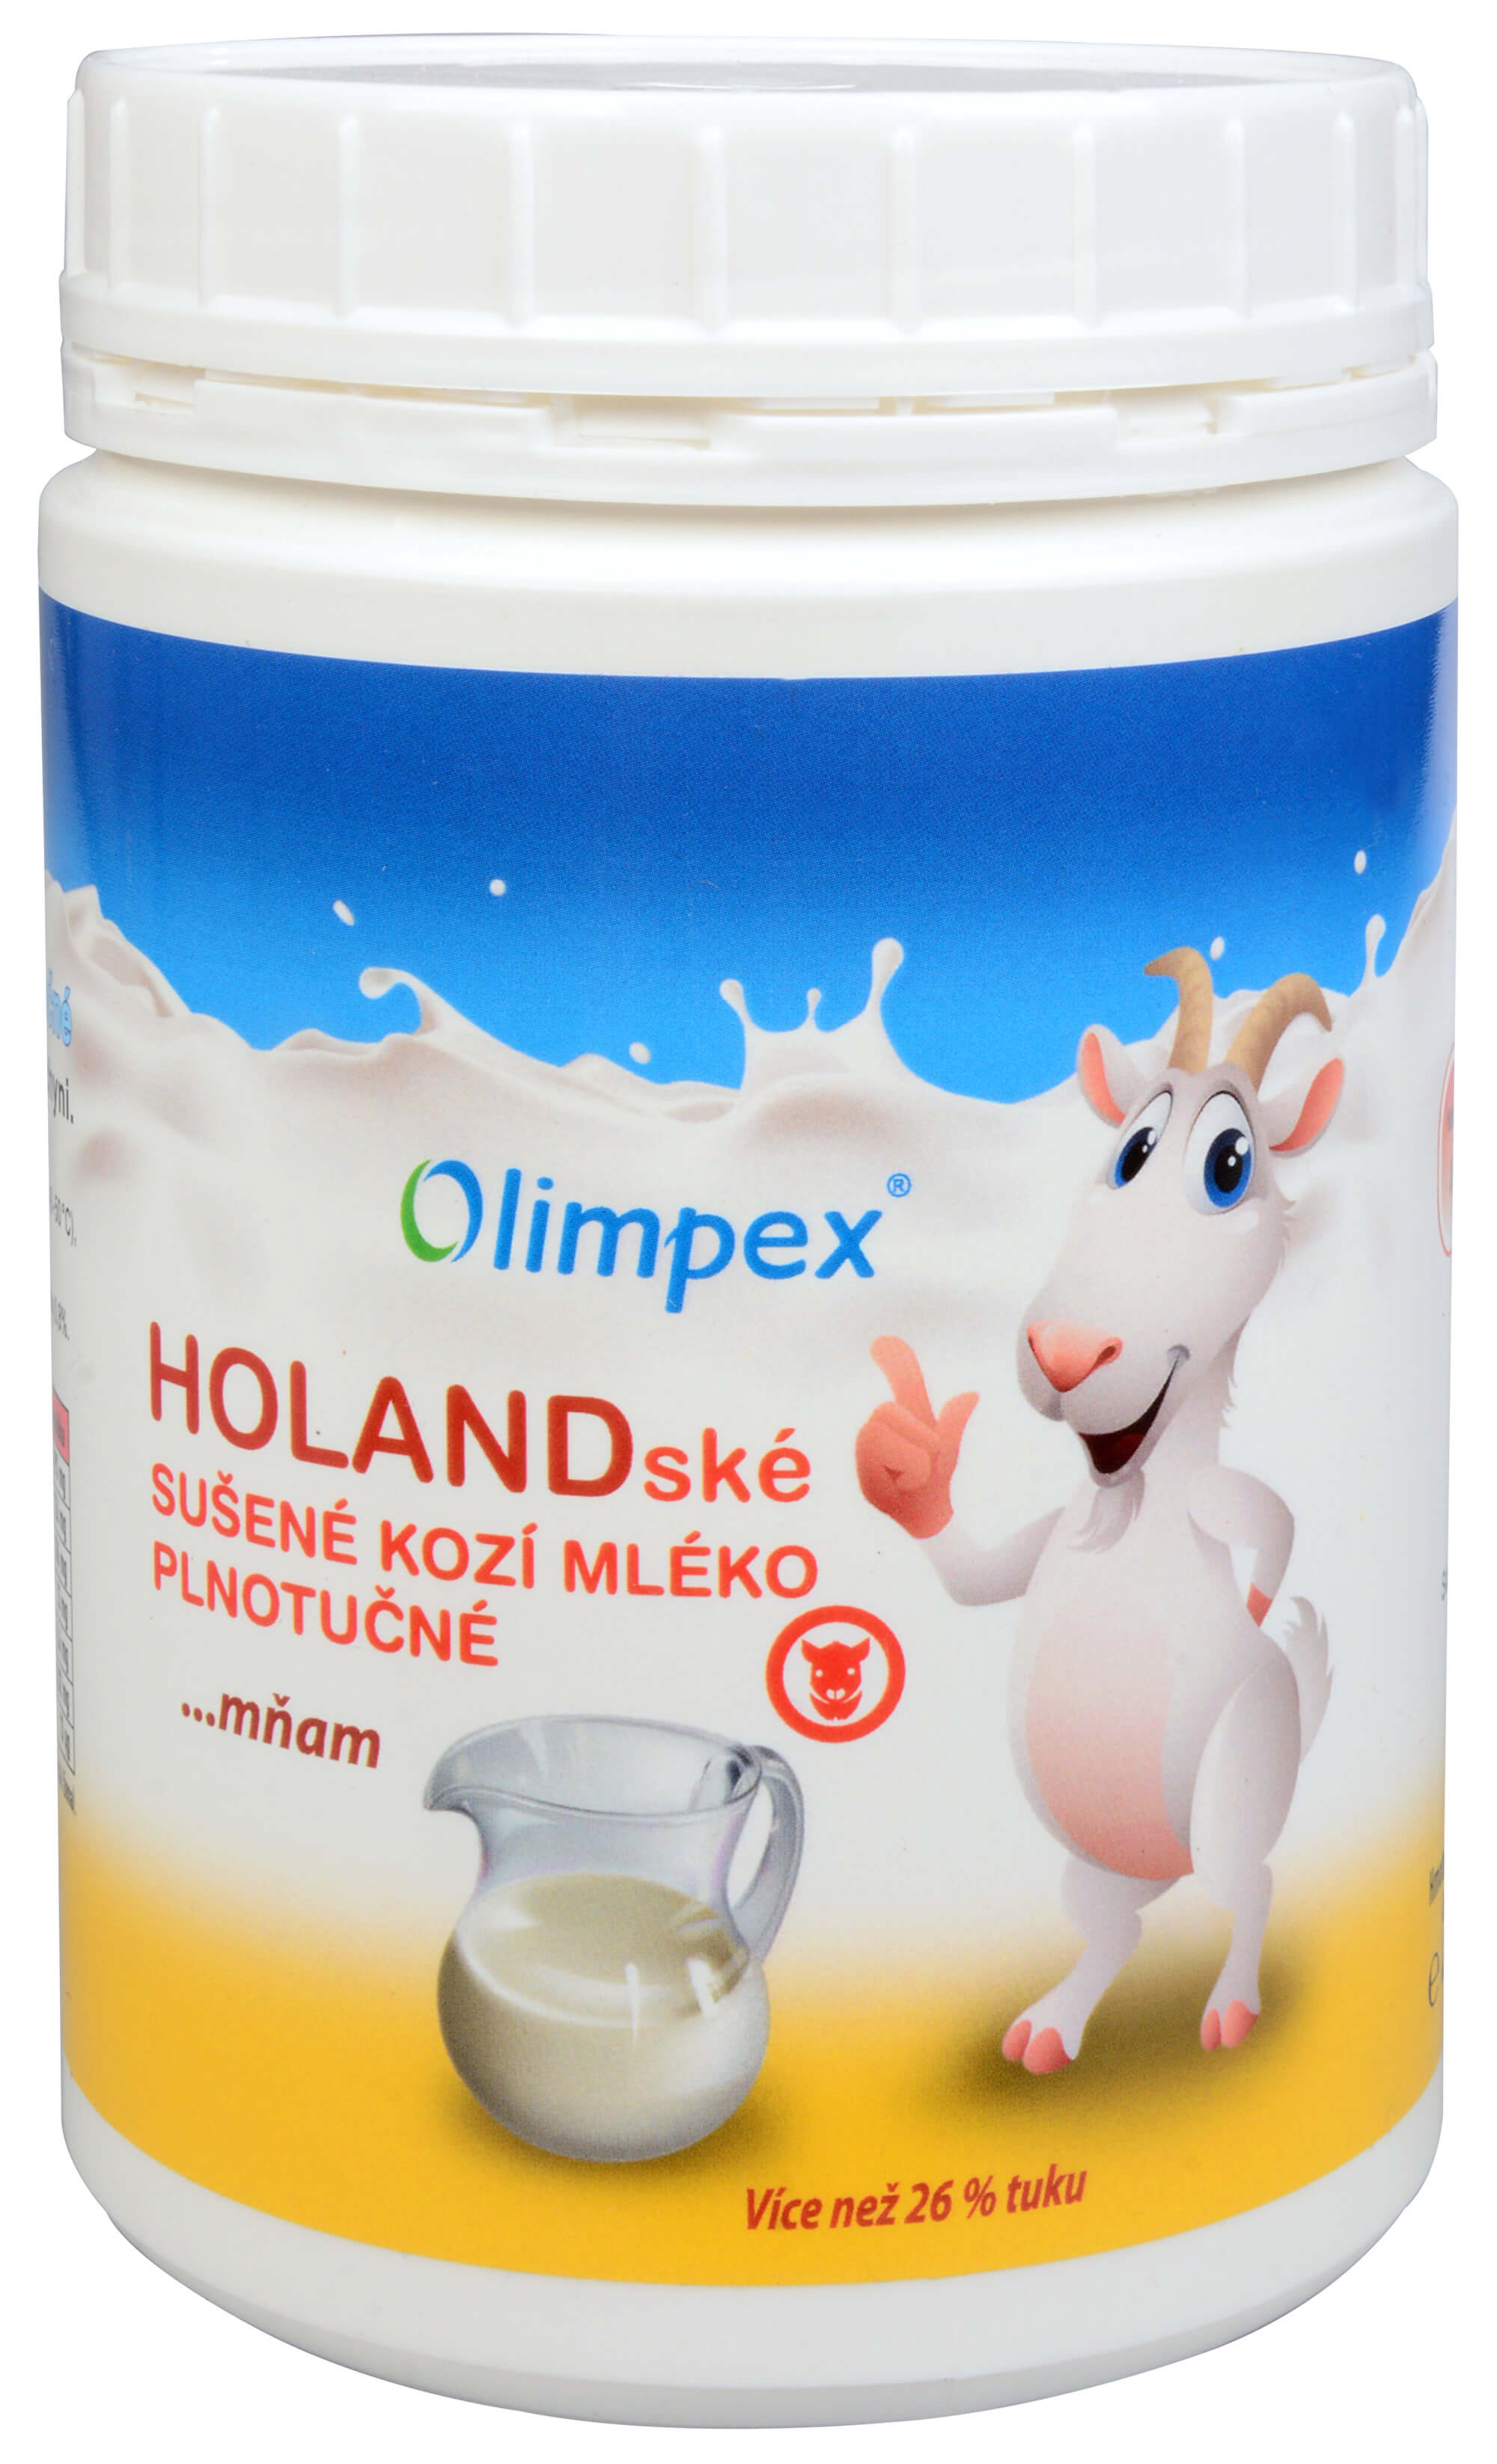 Zobrazit detail výrobku Olimpex Holandské sušené kozí mléko 240 g